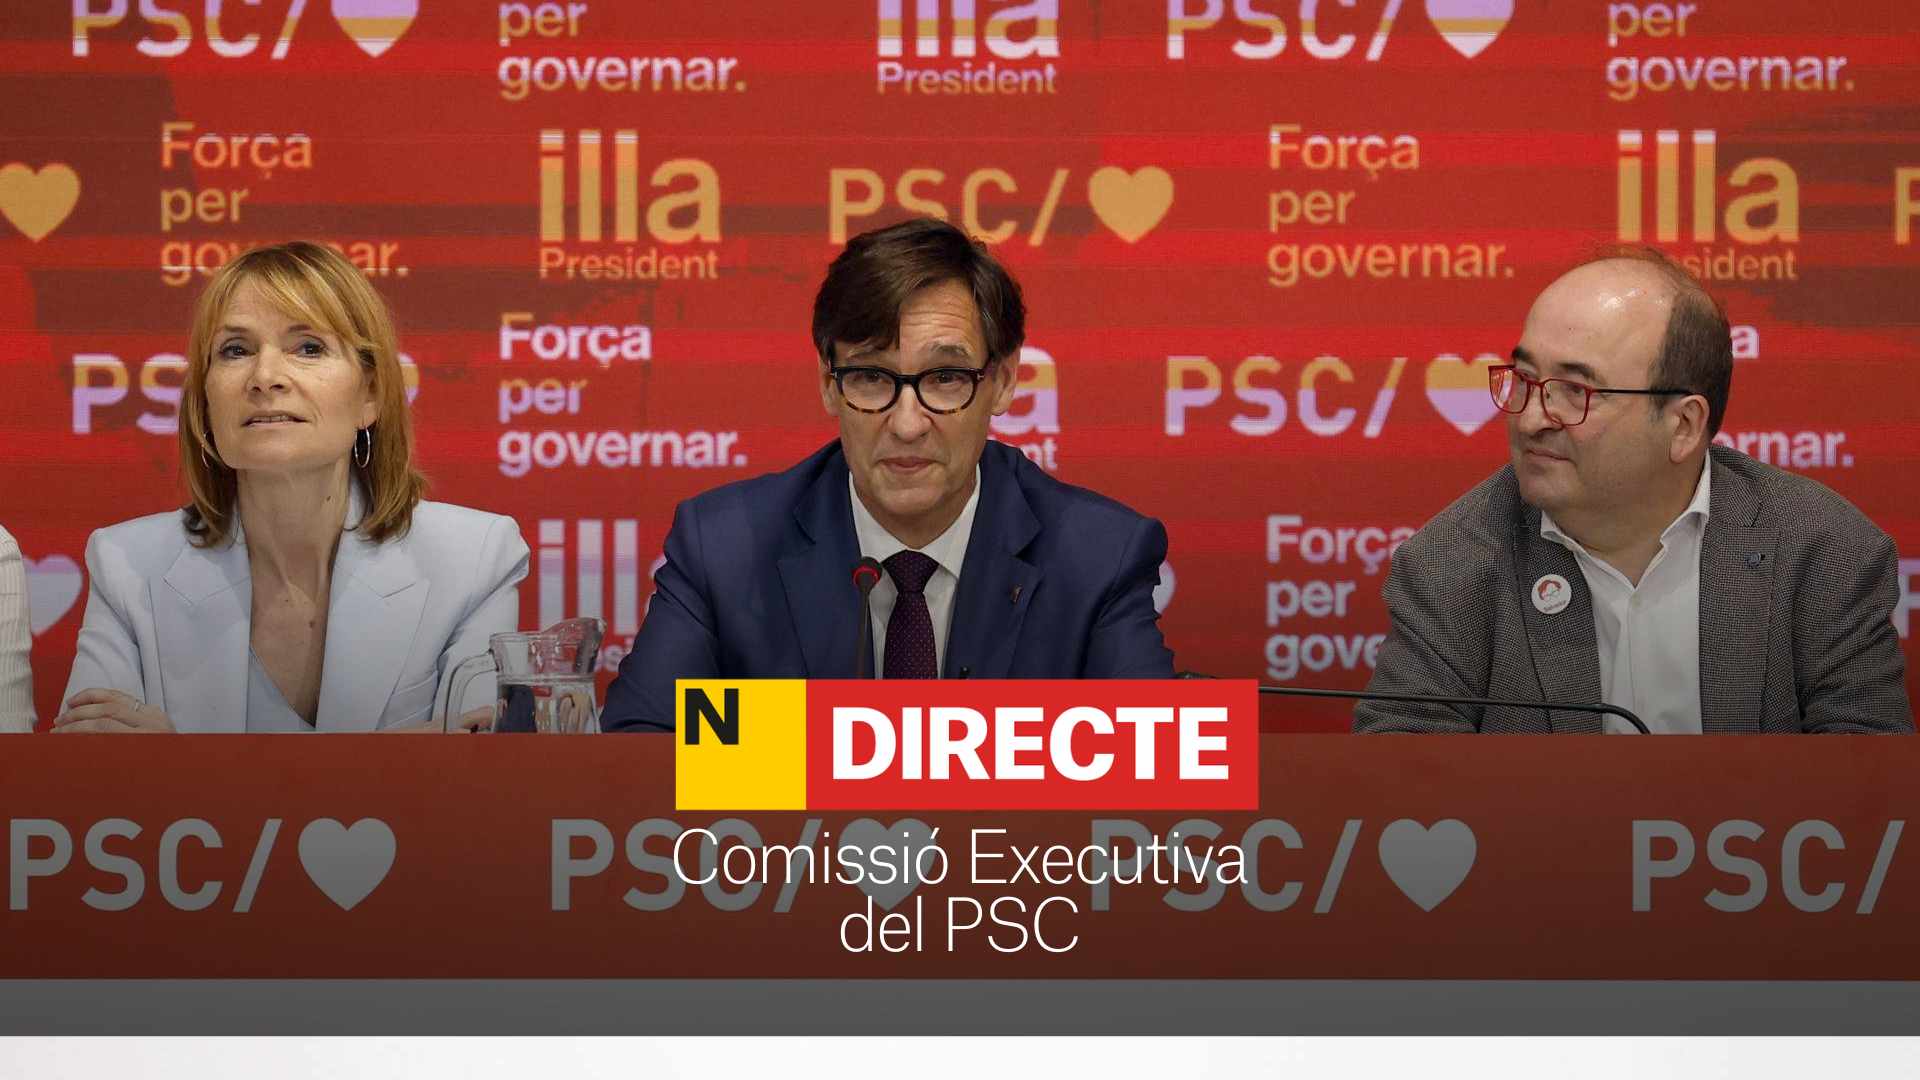 Comisión Ejecutiva del PSC, DIRECTO | Salvador Illa se compromete a cumplir los pactos con ERC y comunes